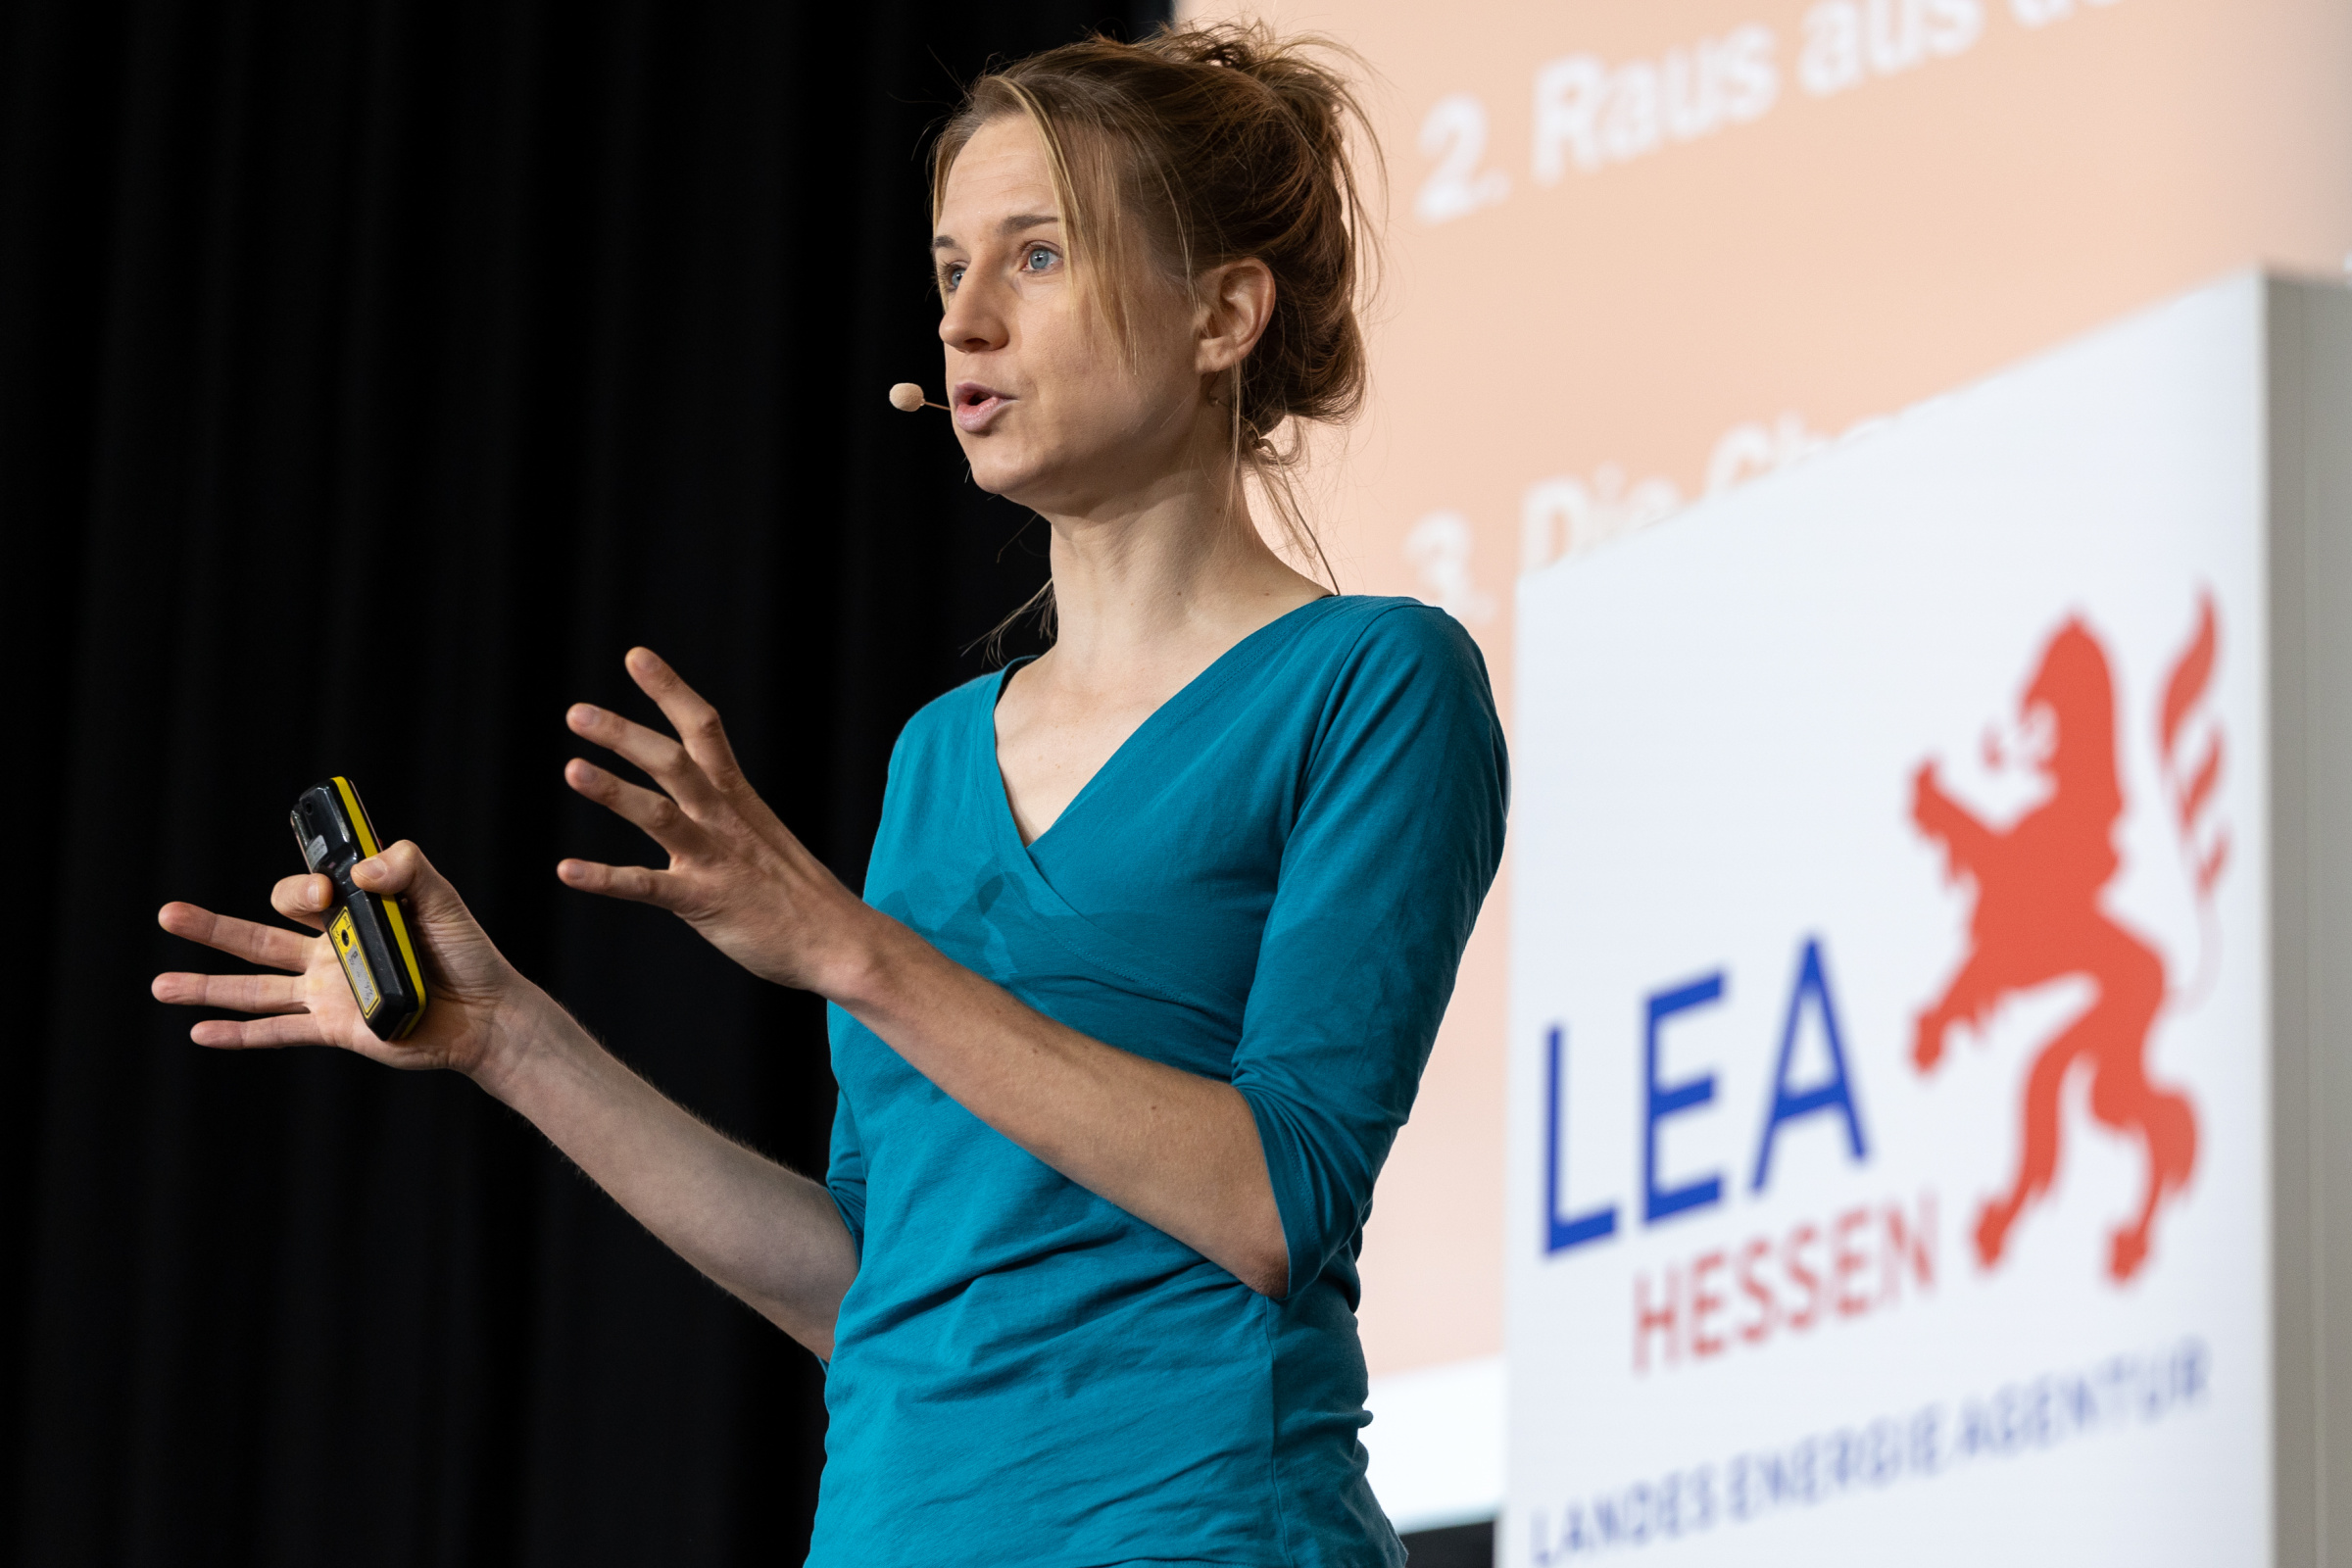 Junge mit Kopfmikrofon und Fernbedienung steht auf einer Bühne, im Hintergrund das Logo der LEA Hessen.